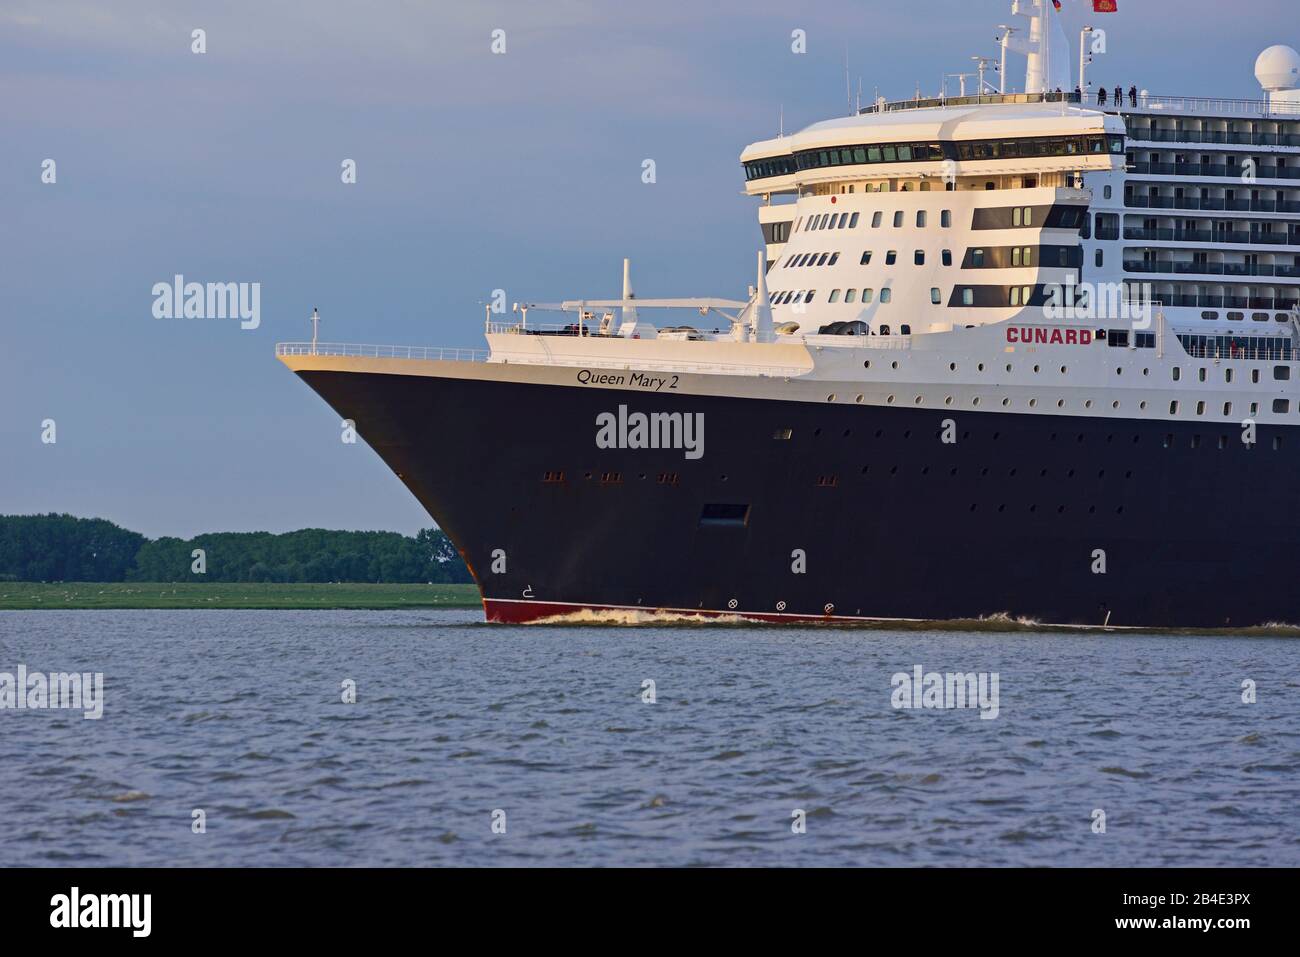 Europa, Germania, Amburgo, Elba, nave passeggeri la regina Maria 2 lascia Amburgo, luce notturna, Foto Stock